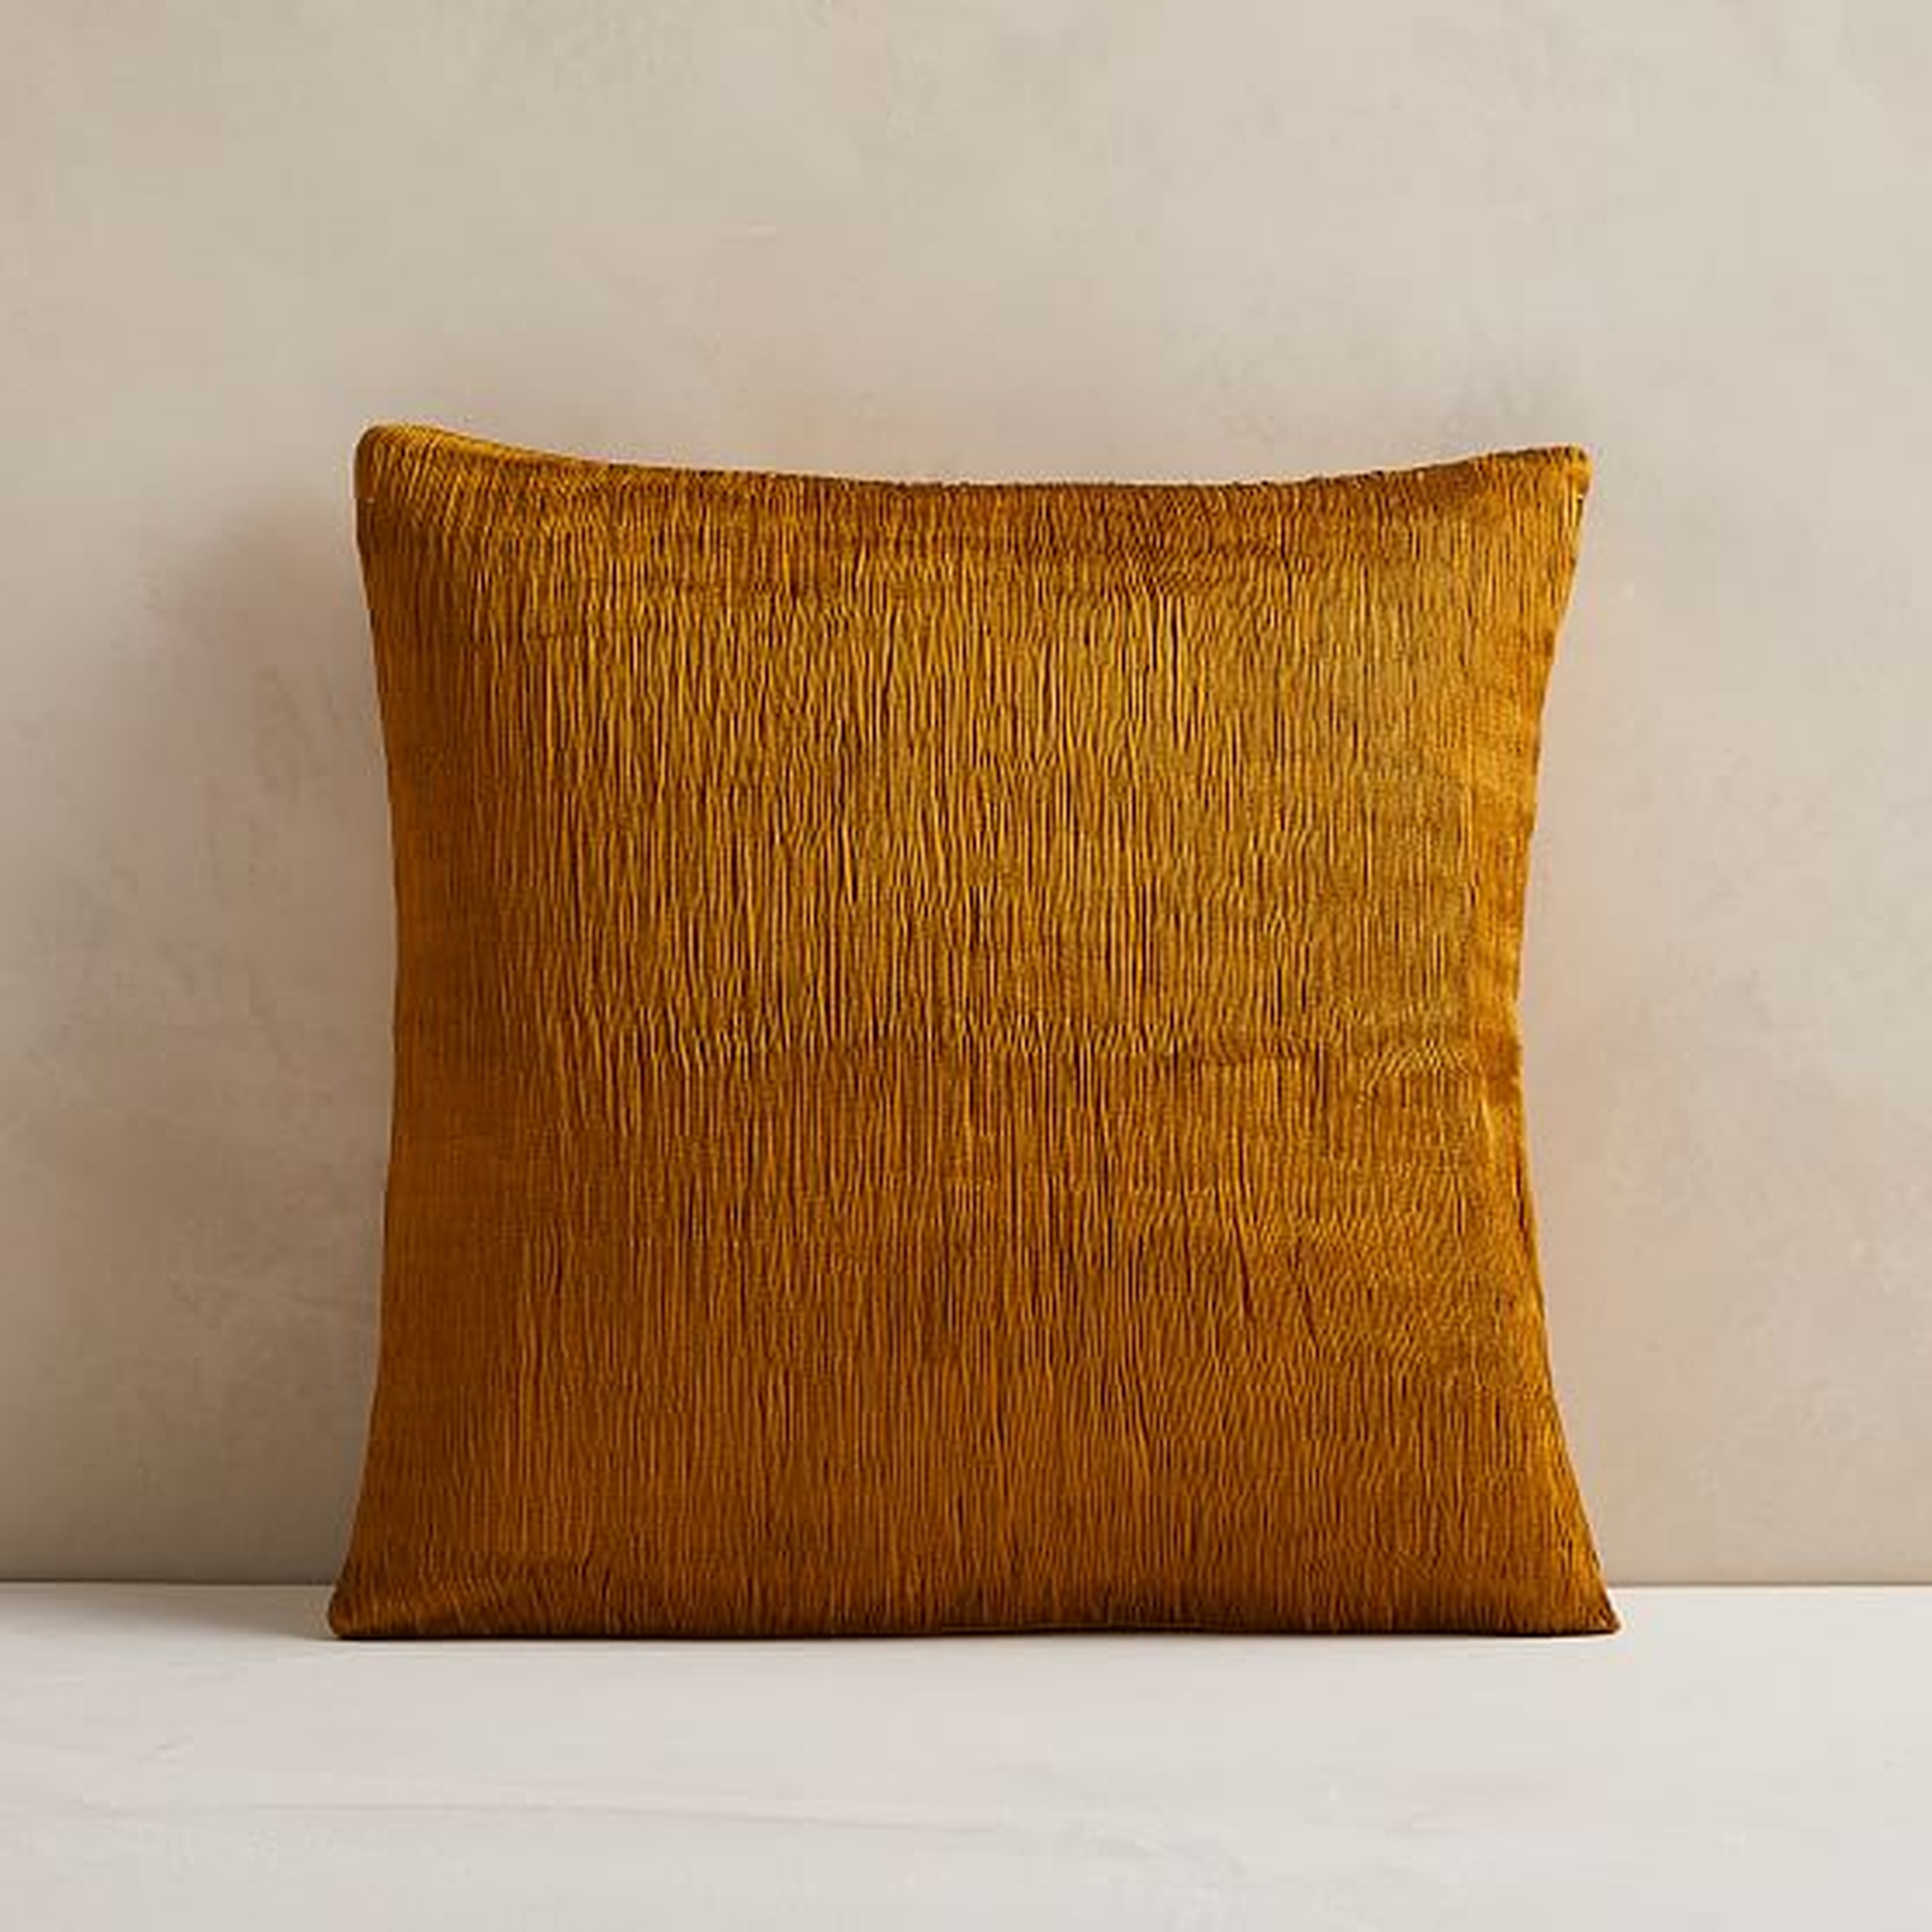 Plisse Pillow Cover, 18"x18", Golden Oak - West Elm